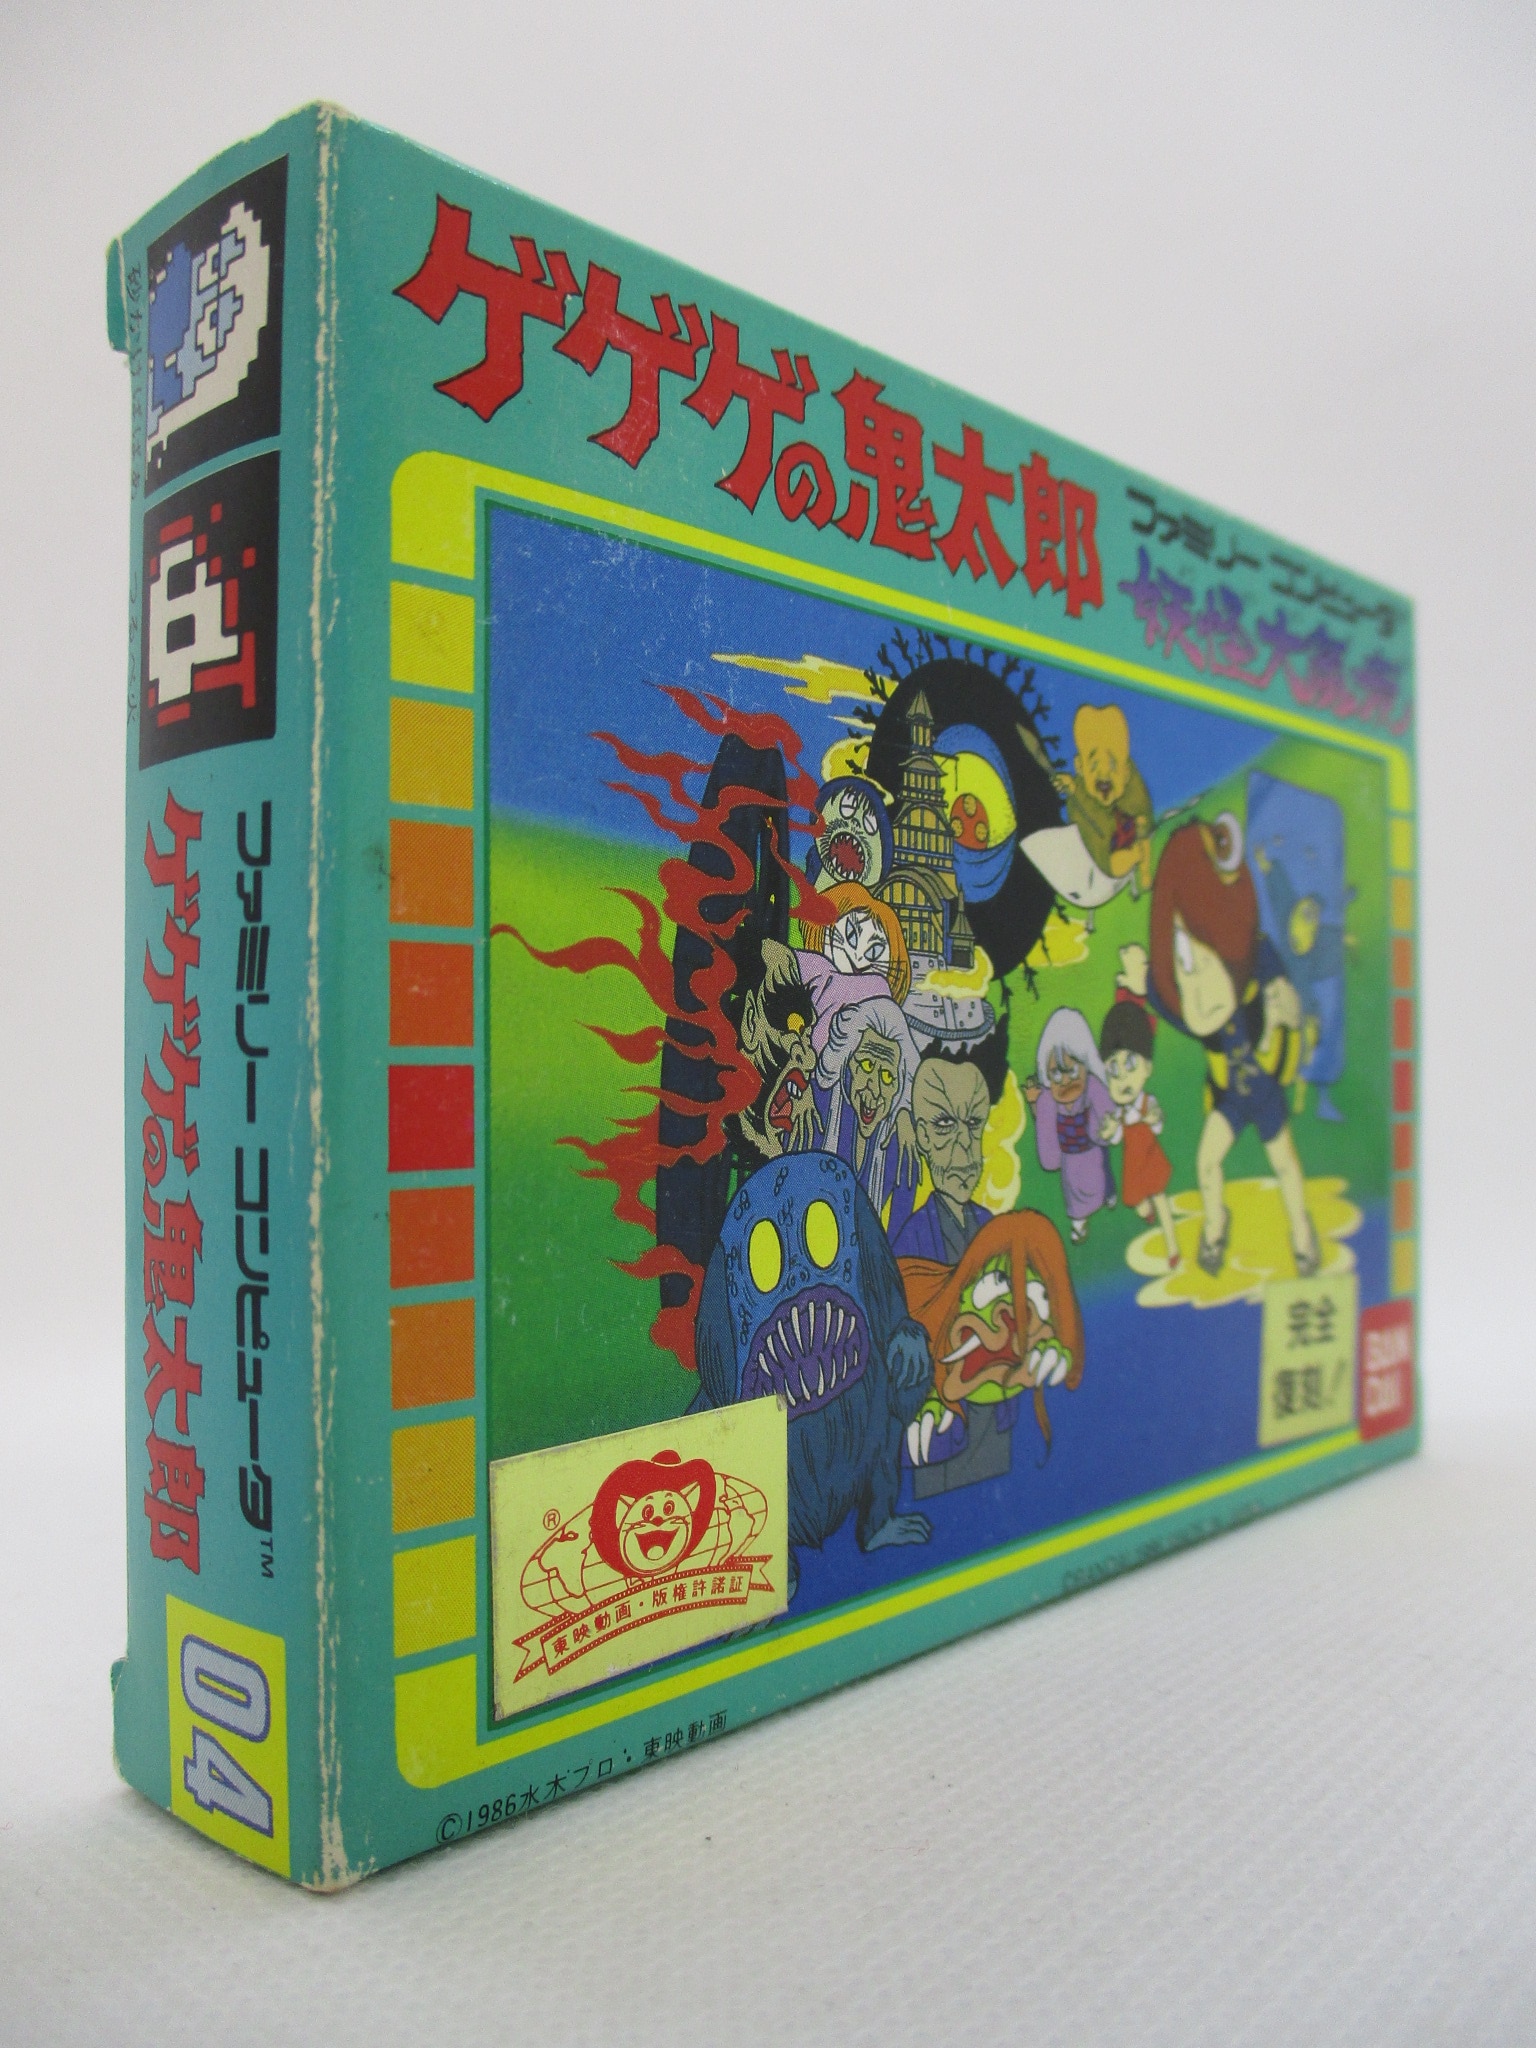 テレビゲームゲゲゲの鬼太郎 妖怪大魔境 ファミコンカセット 箱 説明 